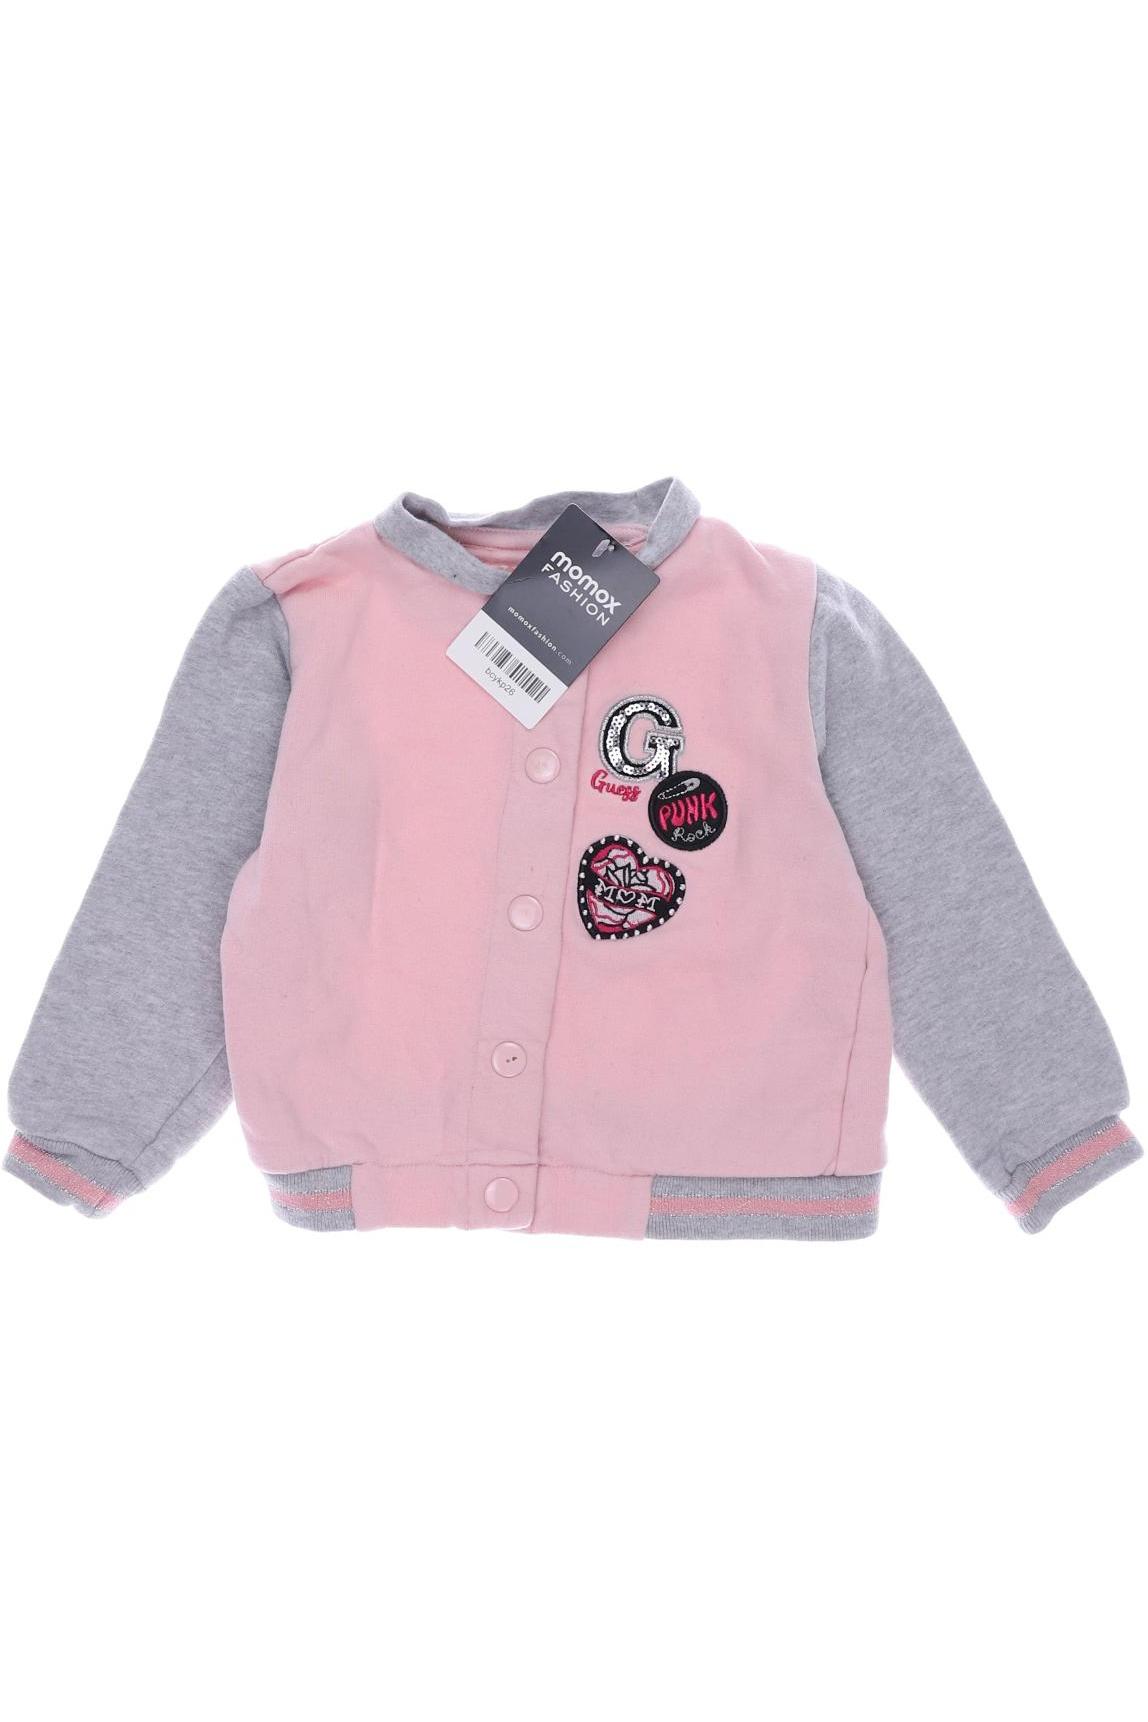 GUESS Mädchen Hoodies & Sweater, pink von Guess